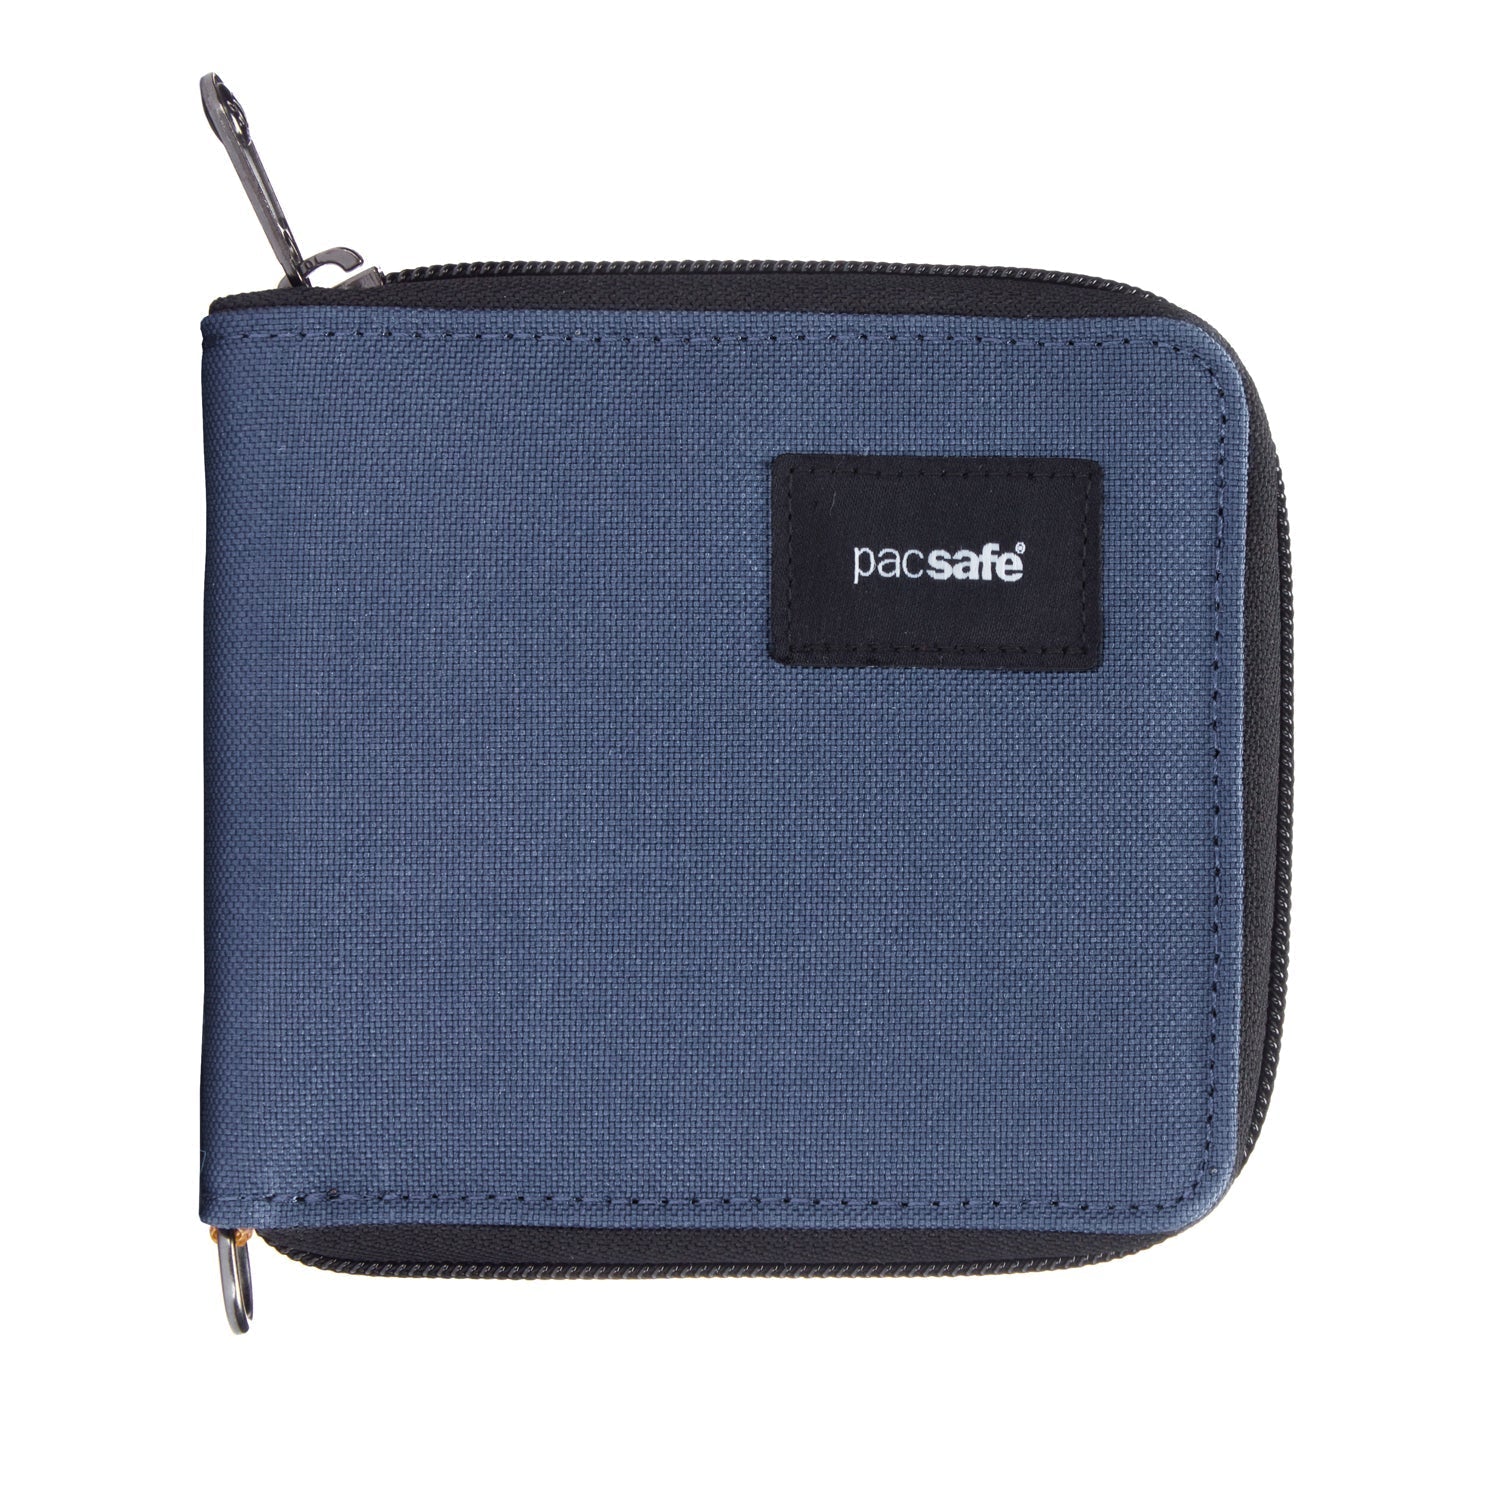 RFIDsafe™ RFID blocking zip around wallet